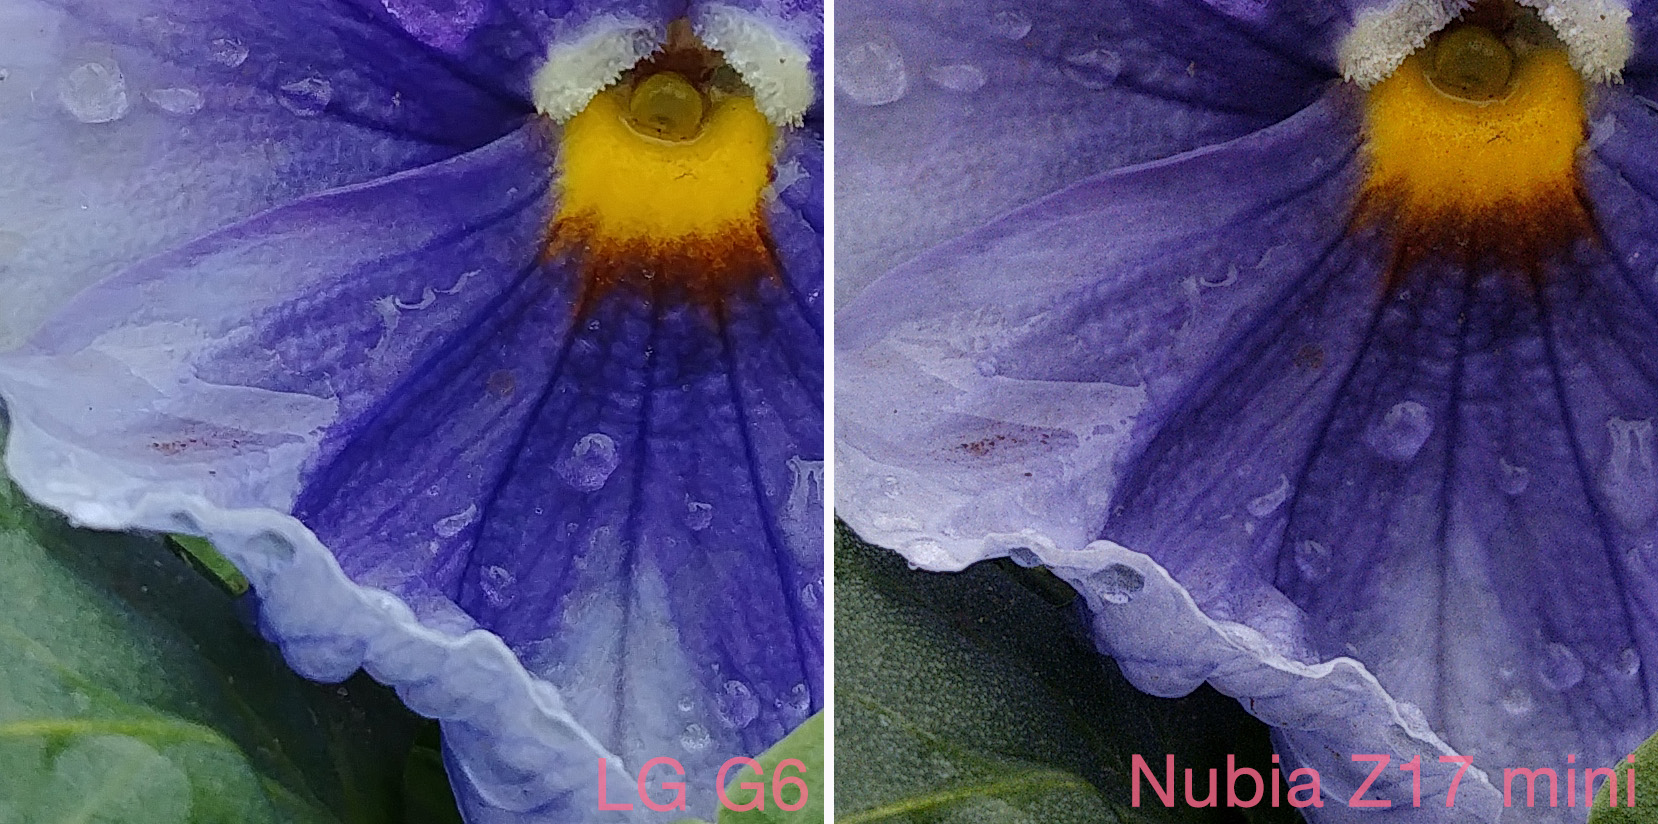 100-процентные кропы с фотографий, снятых на LG G6 и Nubia Z17 mini